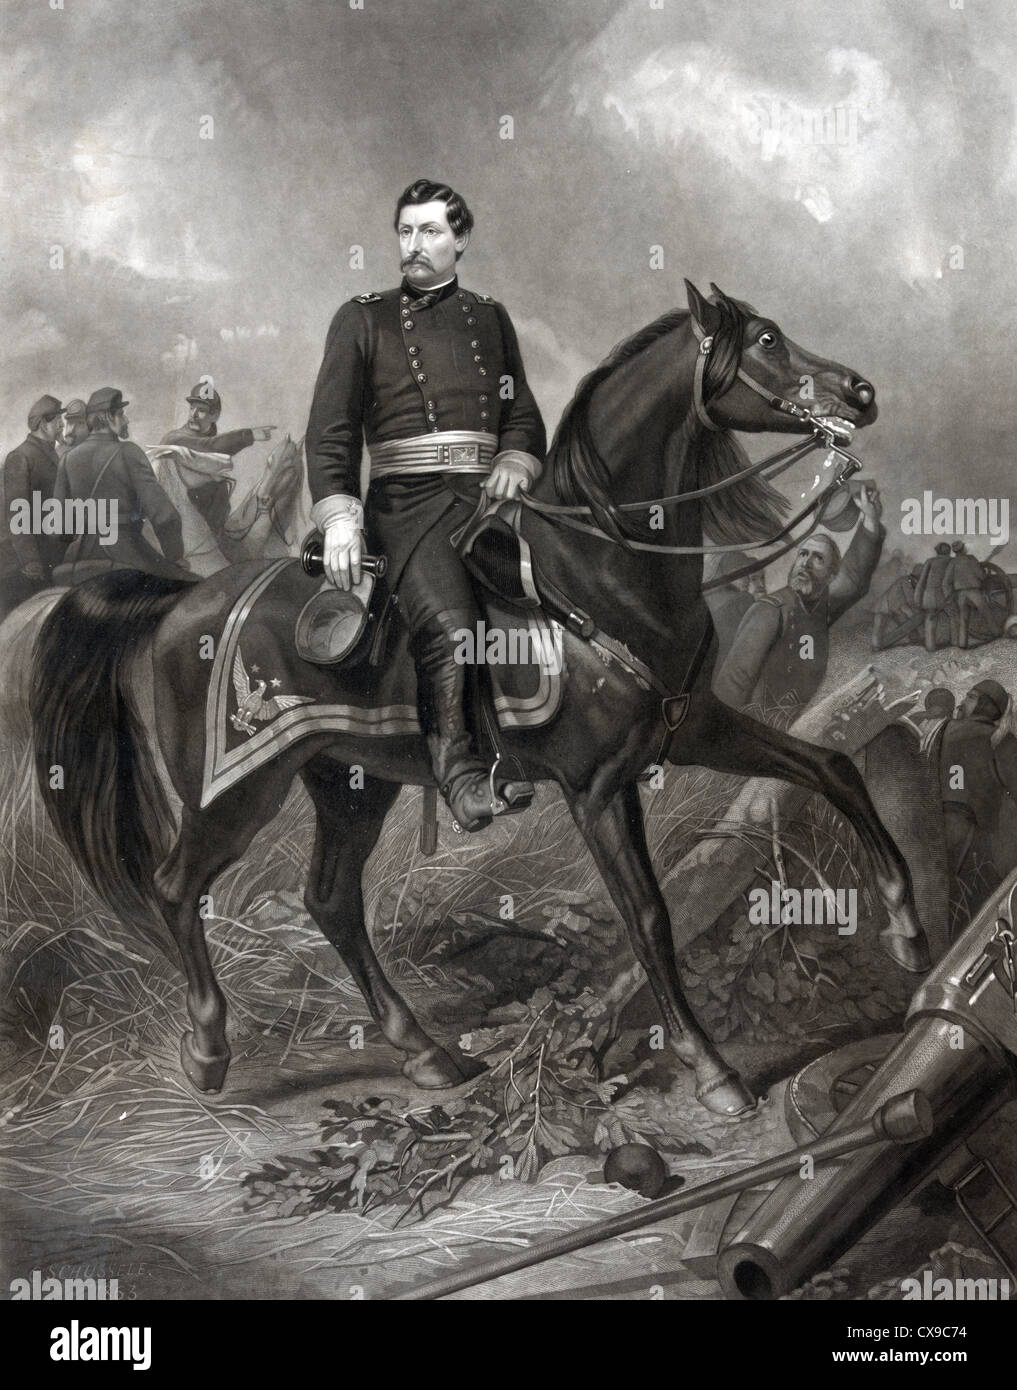 Il maggiore generale George Brinton McClellan nella battaglia di Antietam conosciuta anche come la battaglia di Sharpsburg, Guerra civile americana Foto Stock